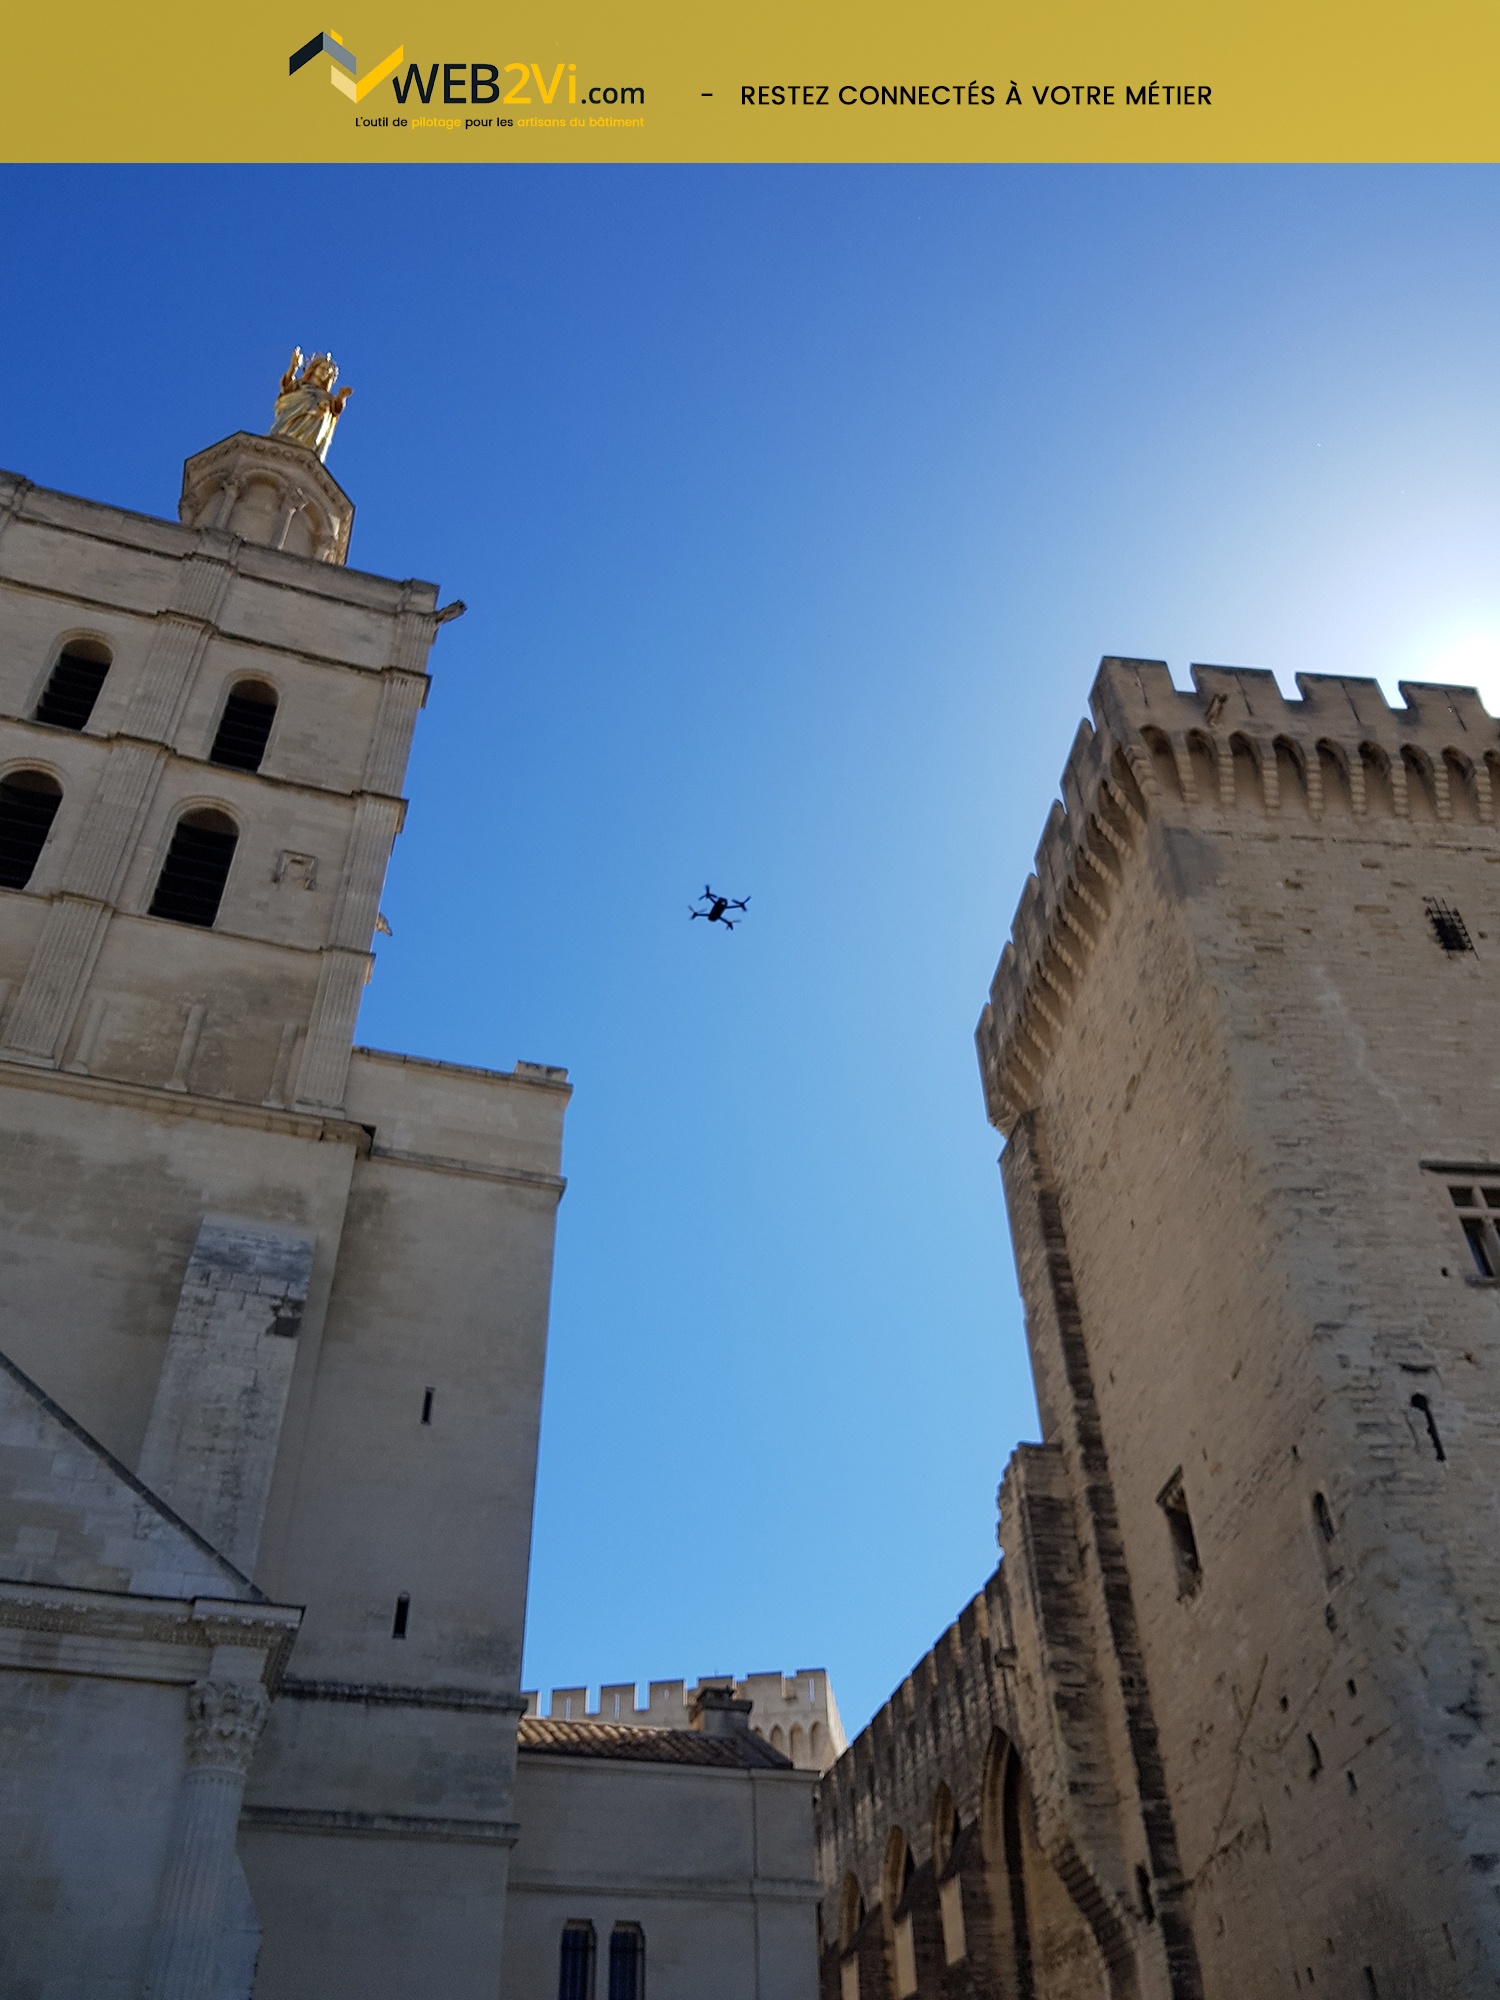 Rencontres UNCP 2018 Avignon Palais des Papes Web2vi drone Parrot métré 3D